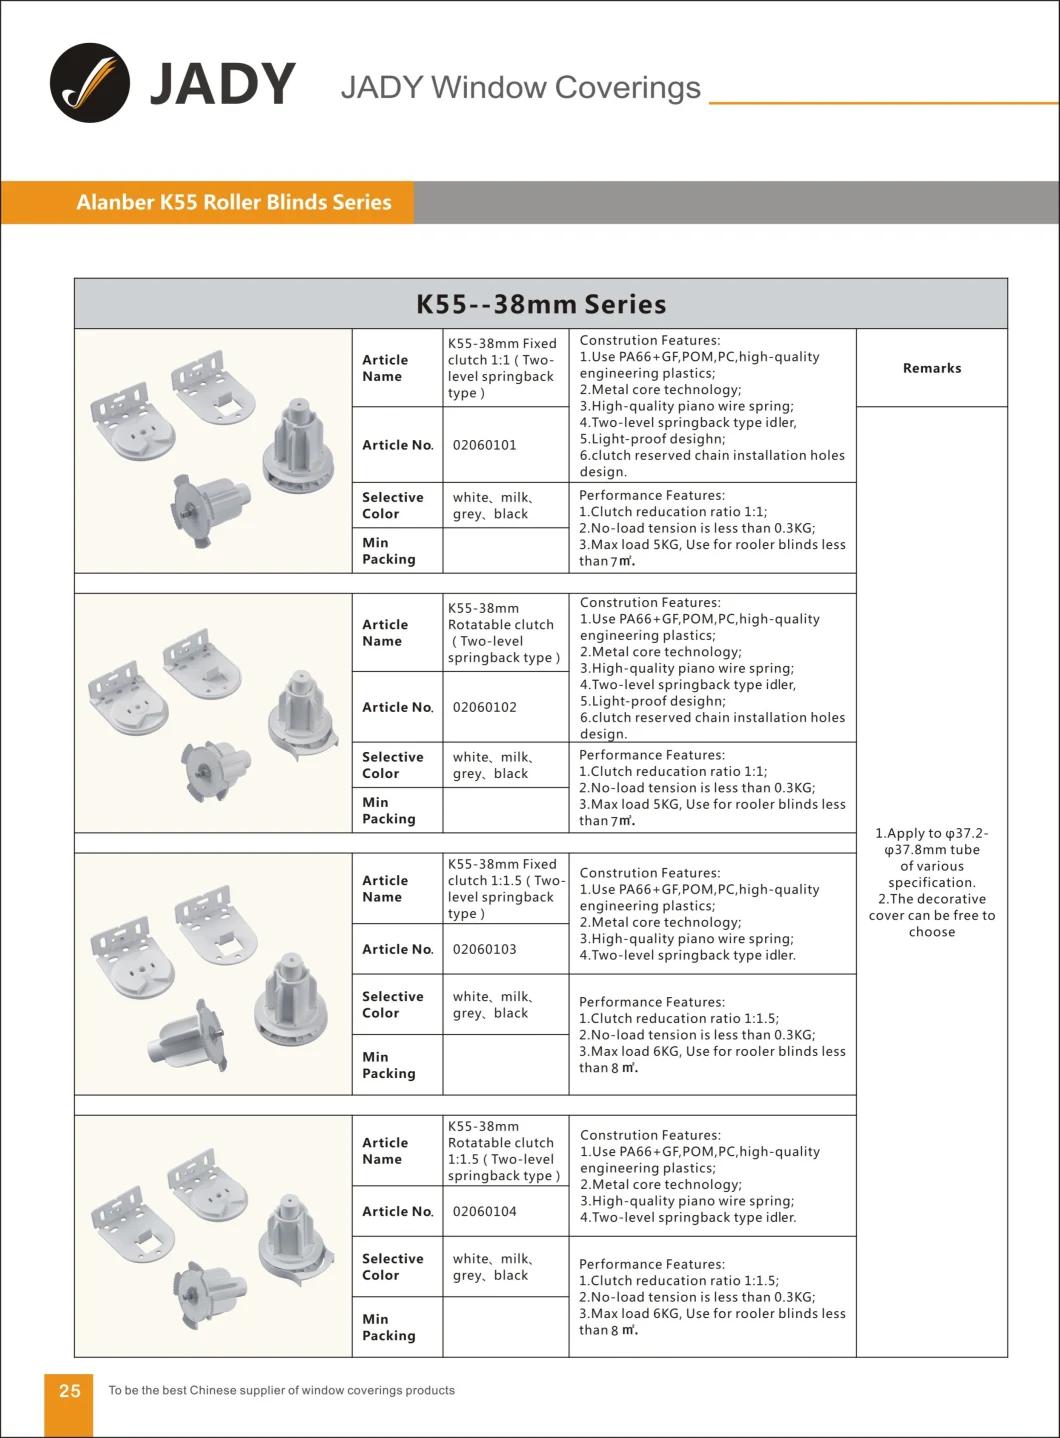 K55-38mm Fixed Deceleration 1: 1.5 Clutch Roller Blinds Components, for Roller Blinds